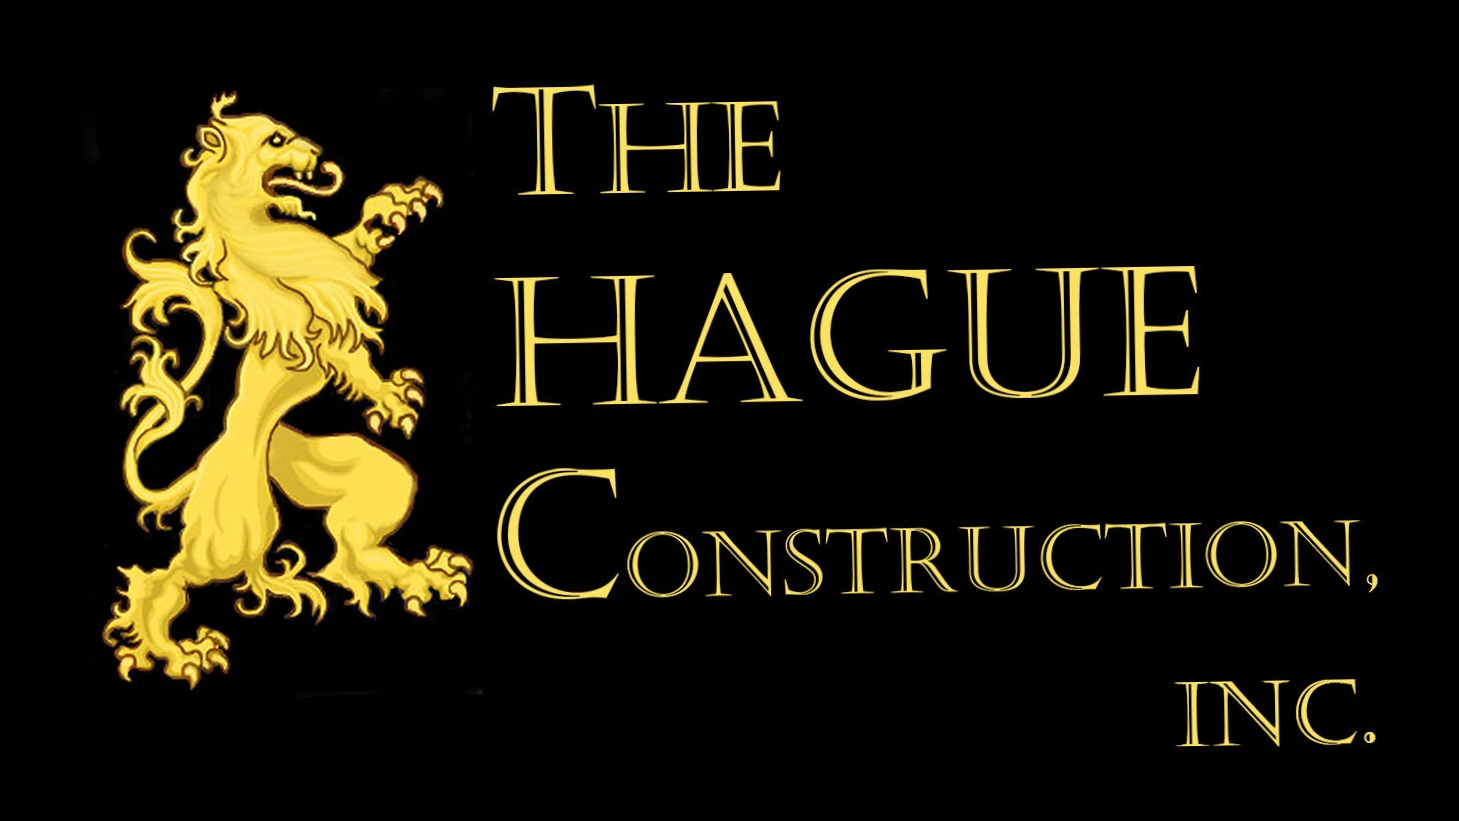 The Hague Construction, Inc.